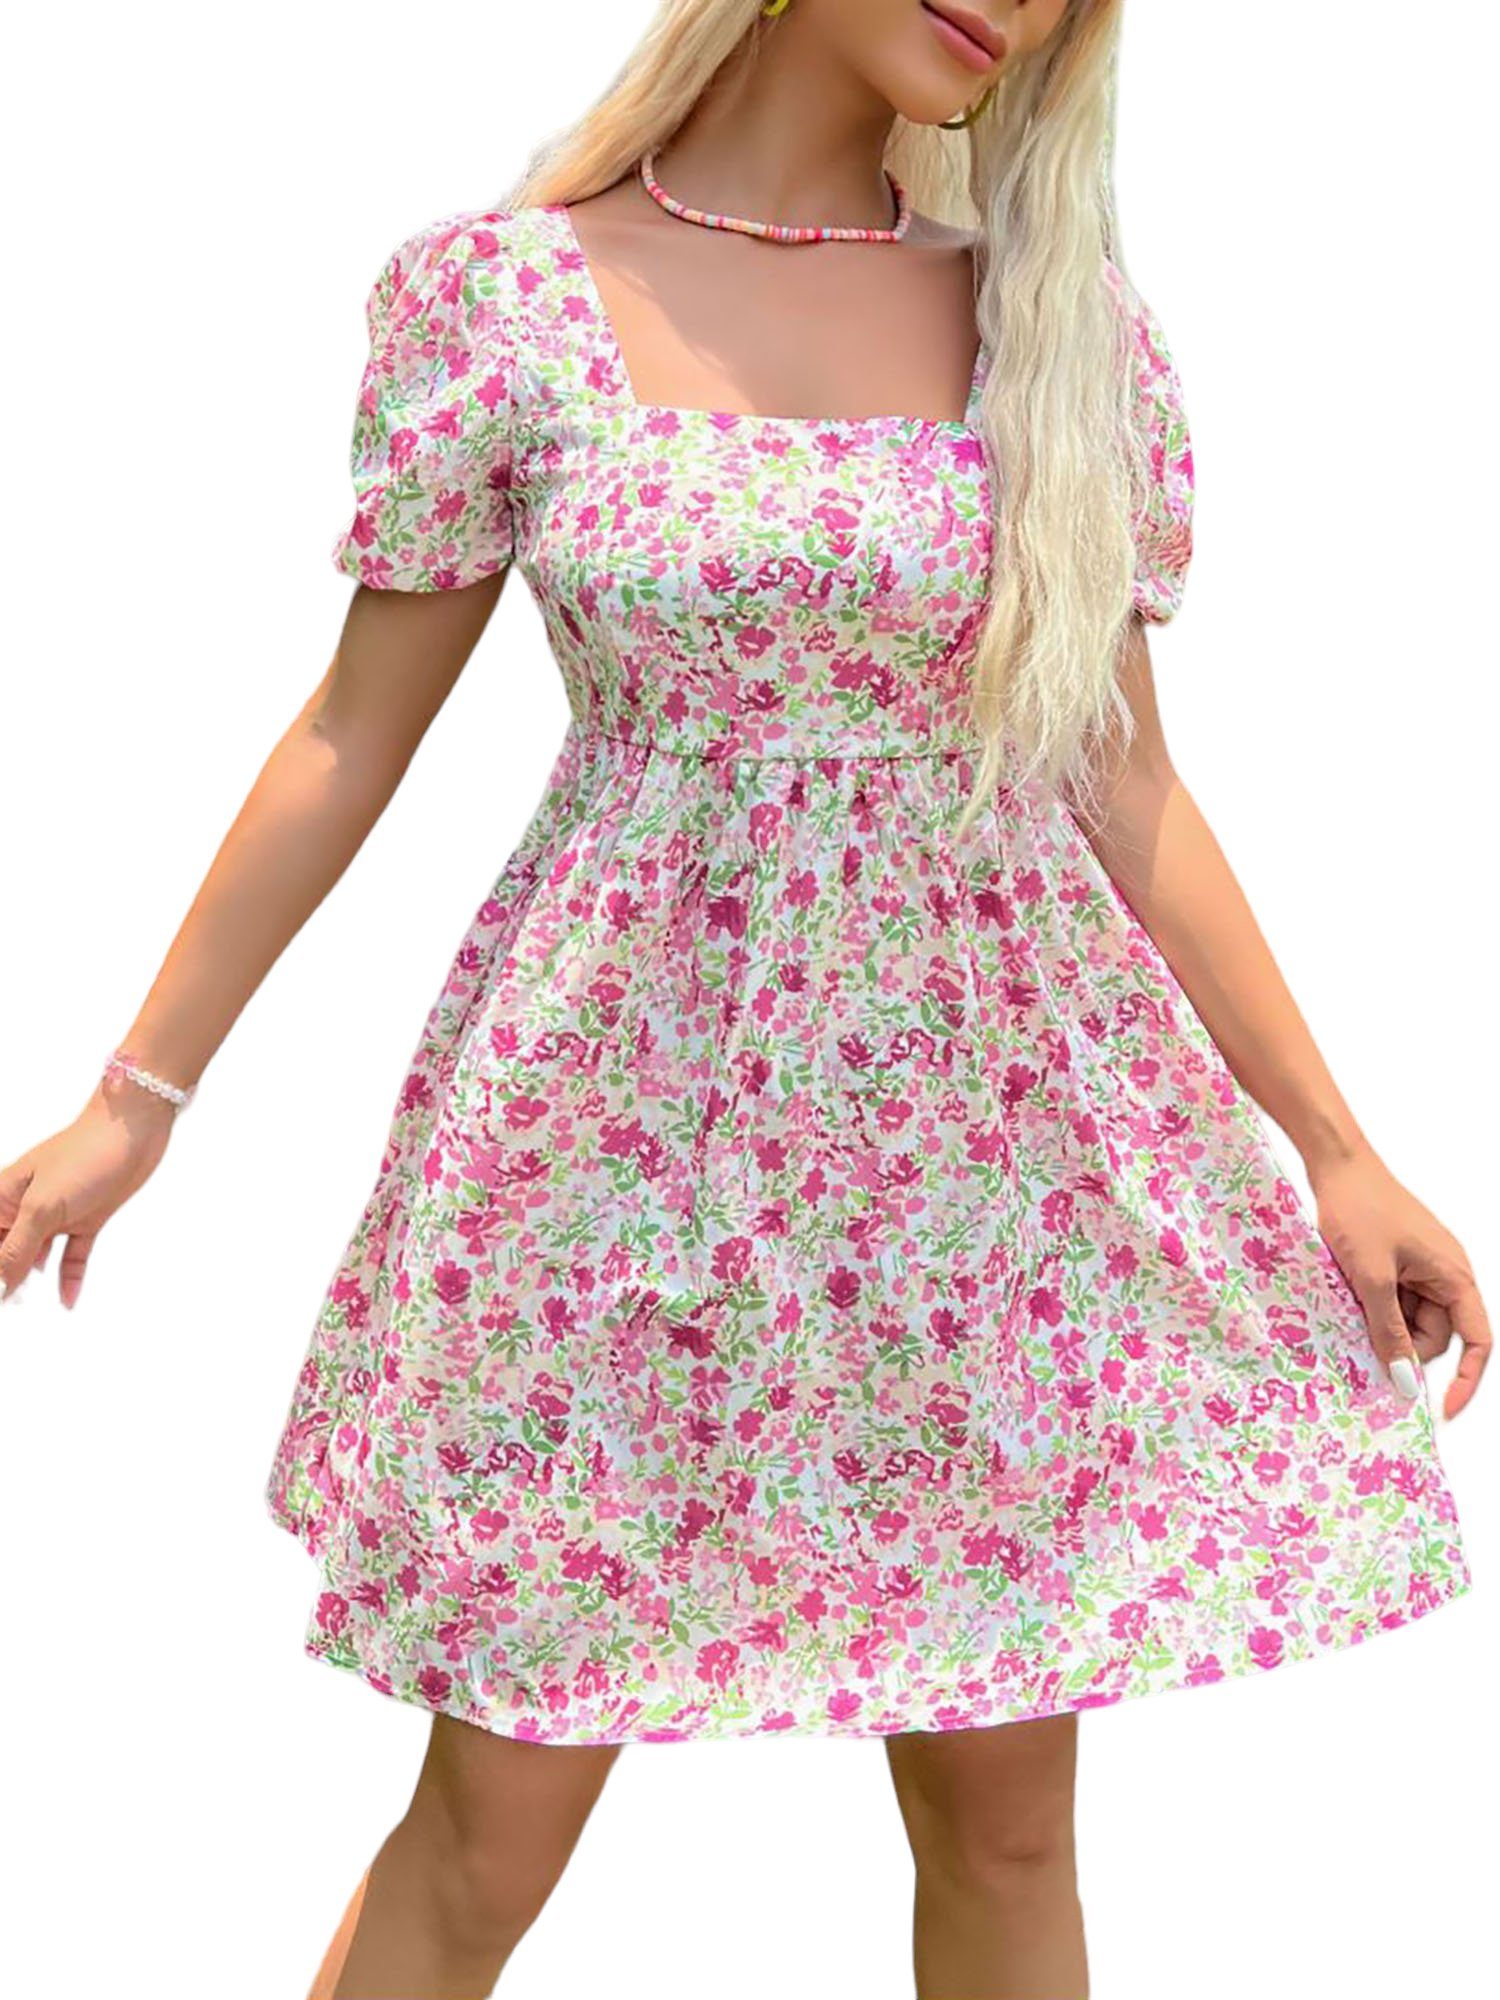 PYL A-Linien-Kleid Damen Blumen Drucken, Mini Sommerkleid 34-38 Größe